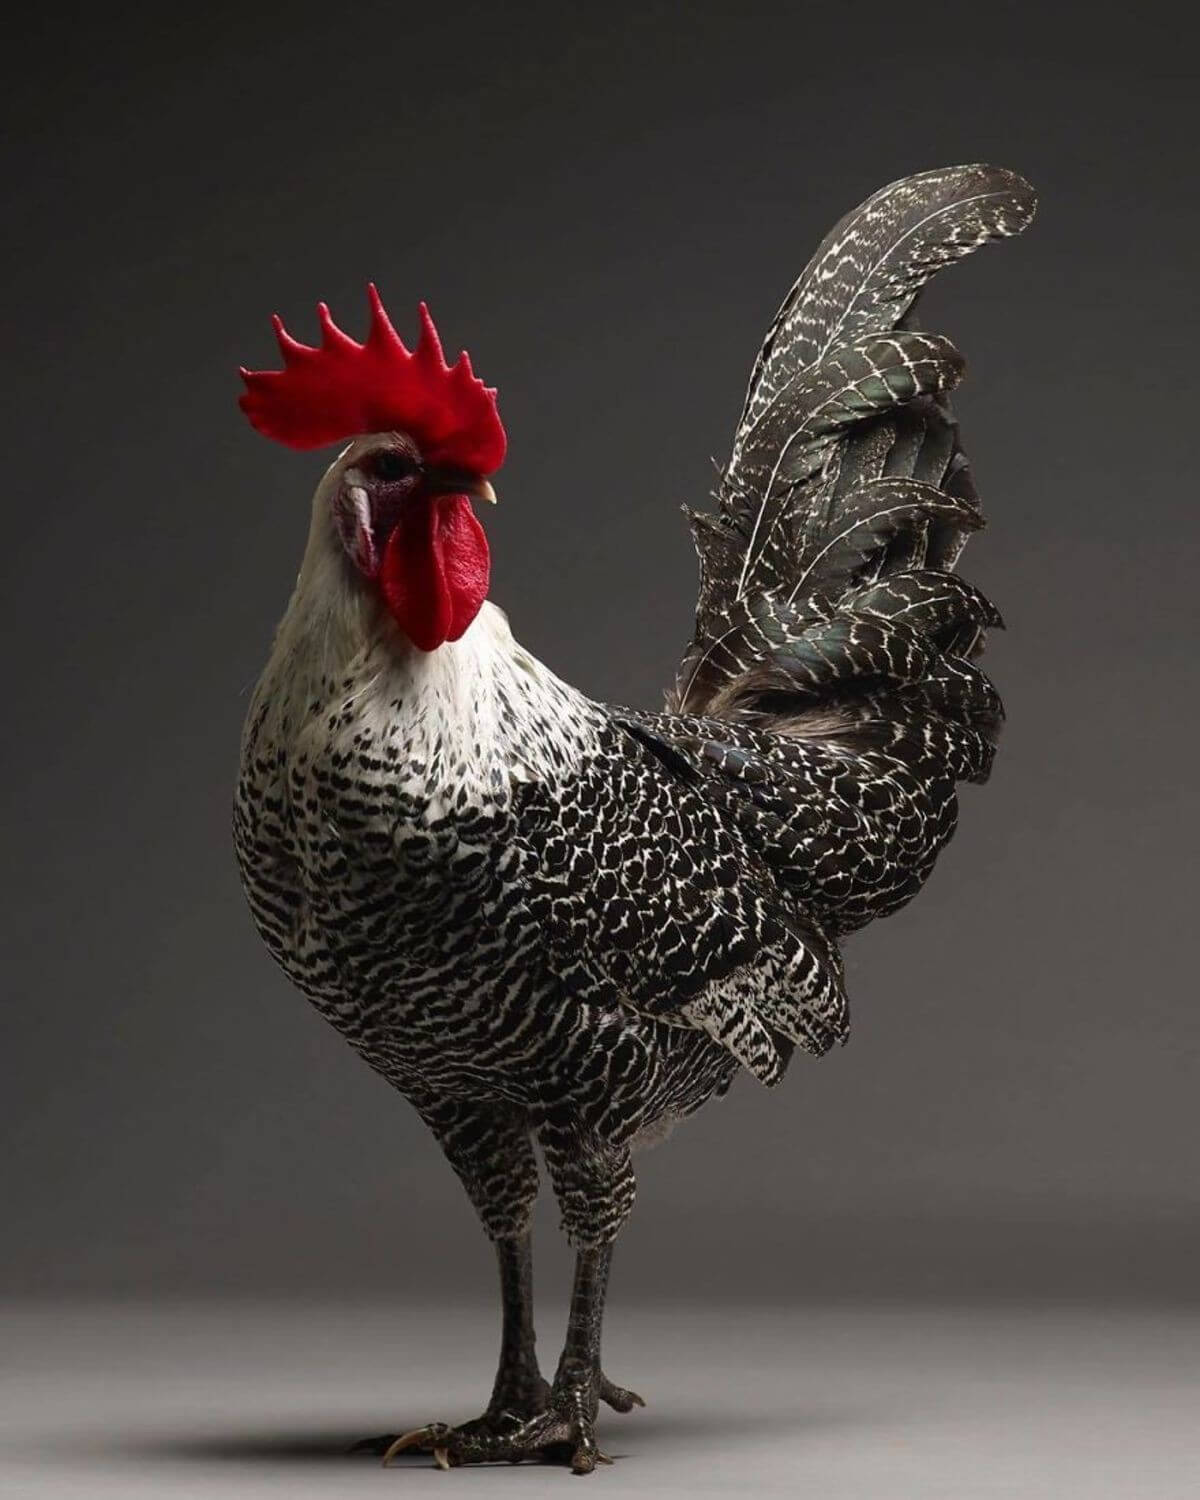 chicken portraits moreno monti matteo tranchellini 12 (1)